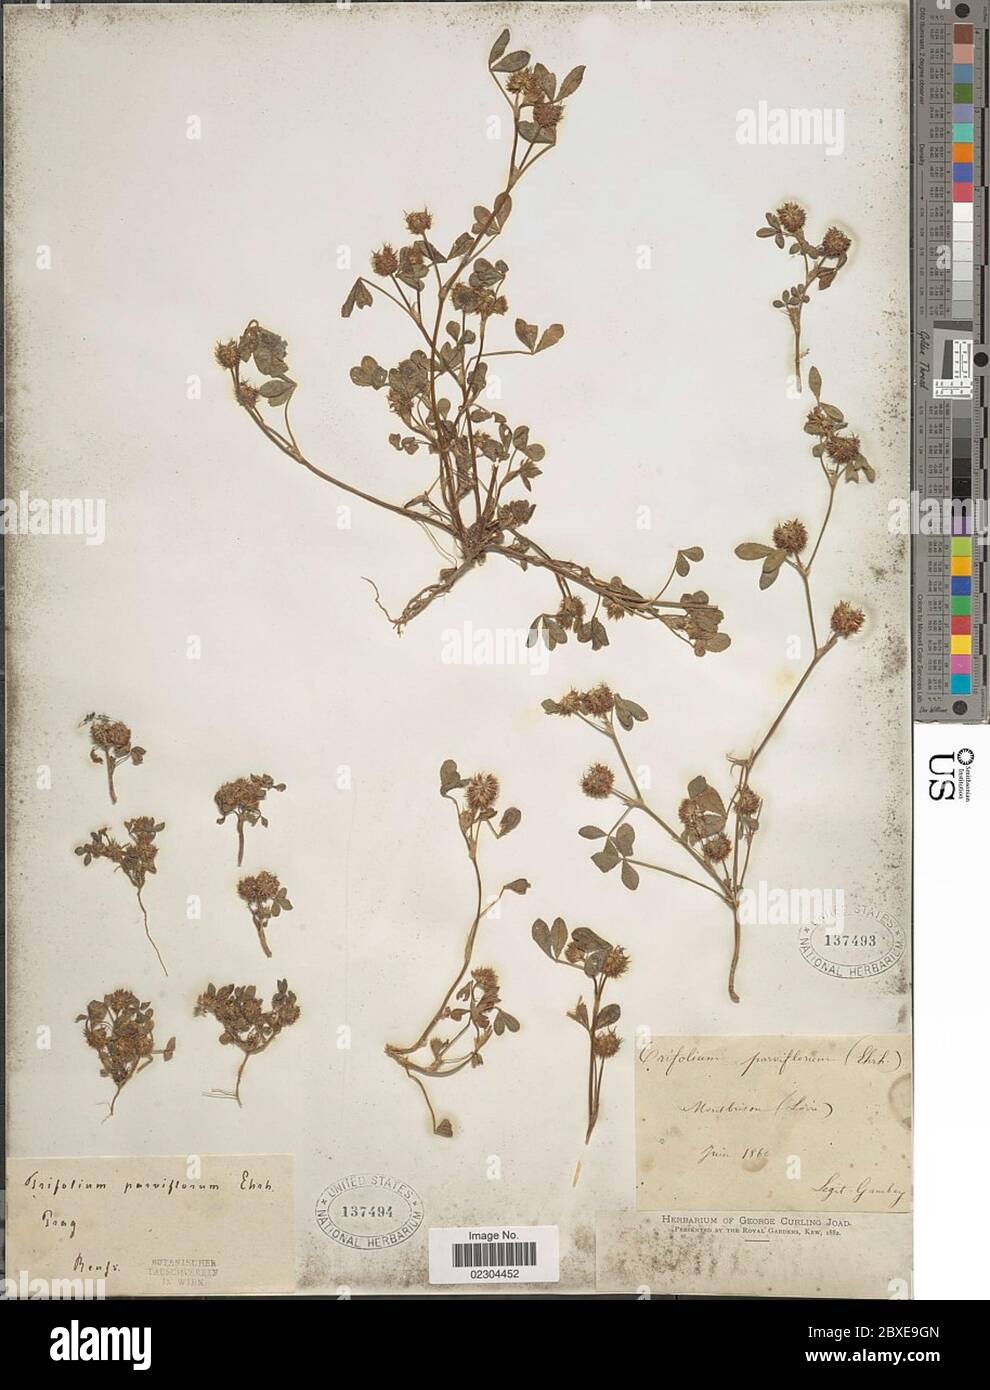 Trifolium parviflorum Ehrh Trifolium parviflorum Ehrh. Stock Photo